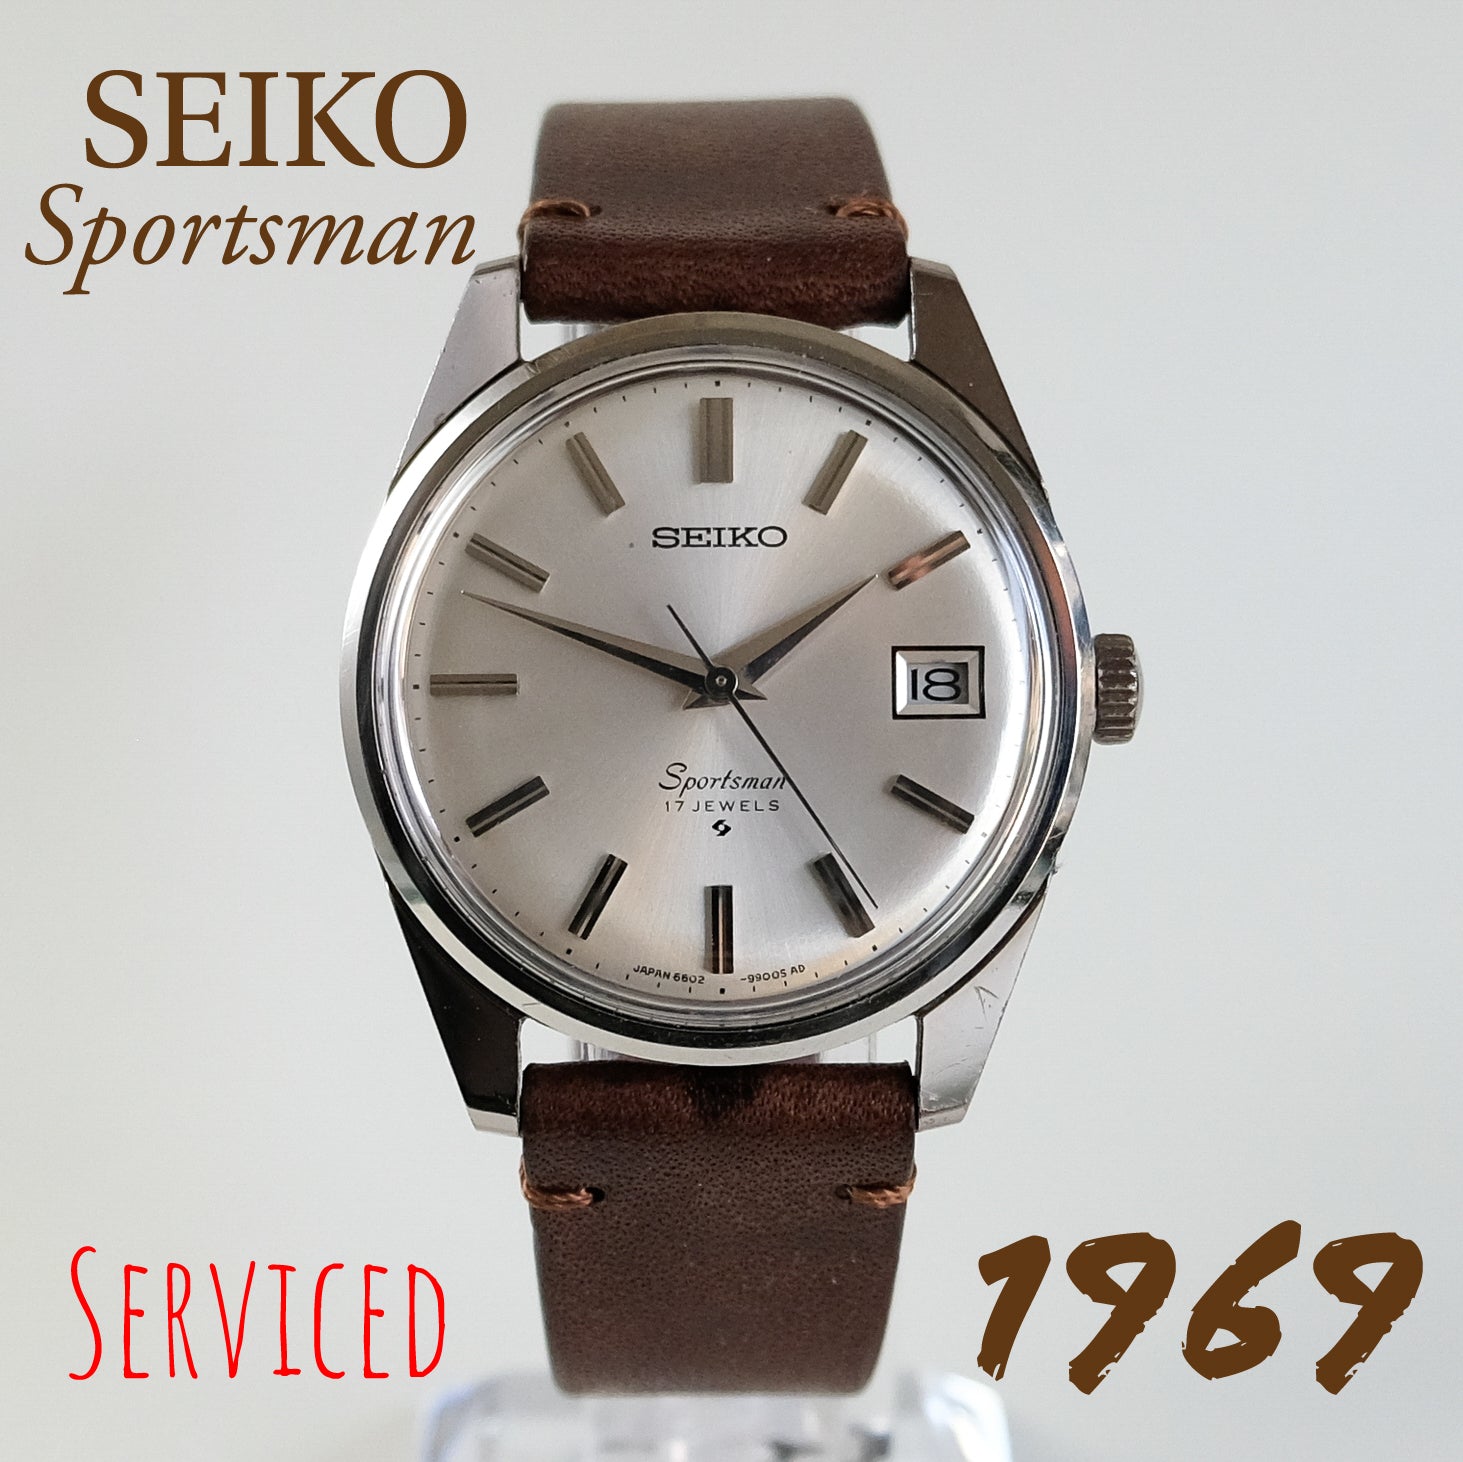 1969 Seiko Sportsman TokeiMedic